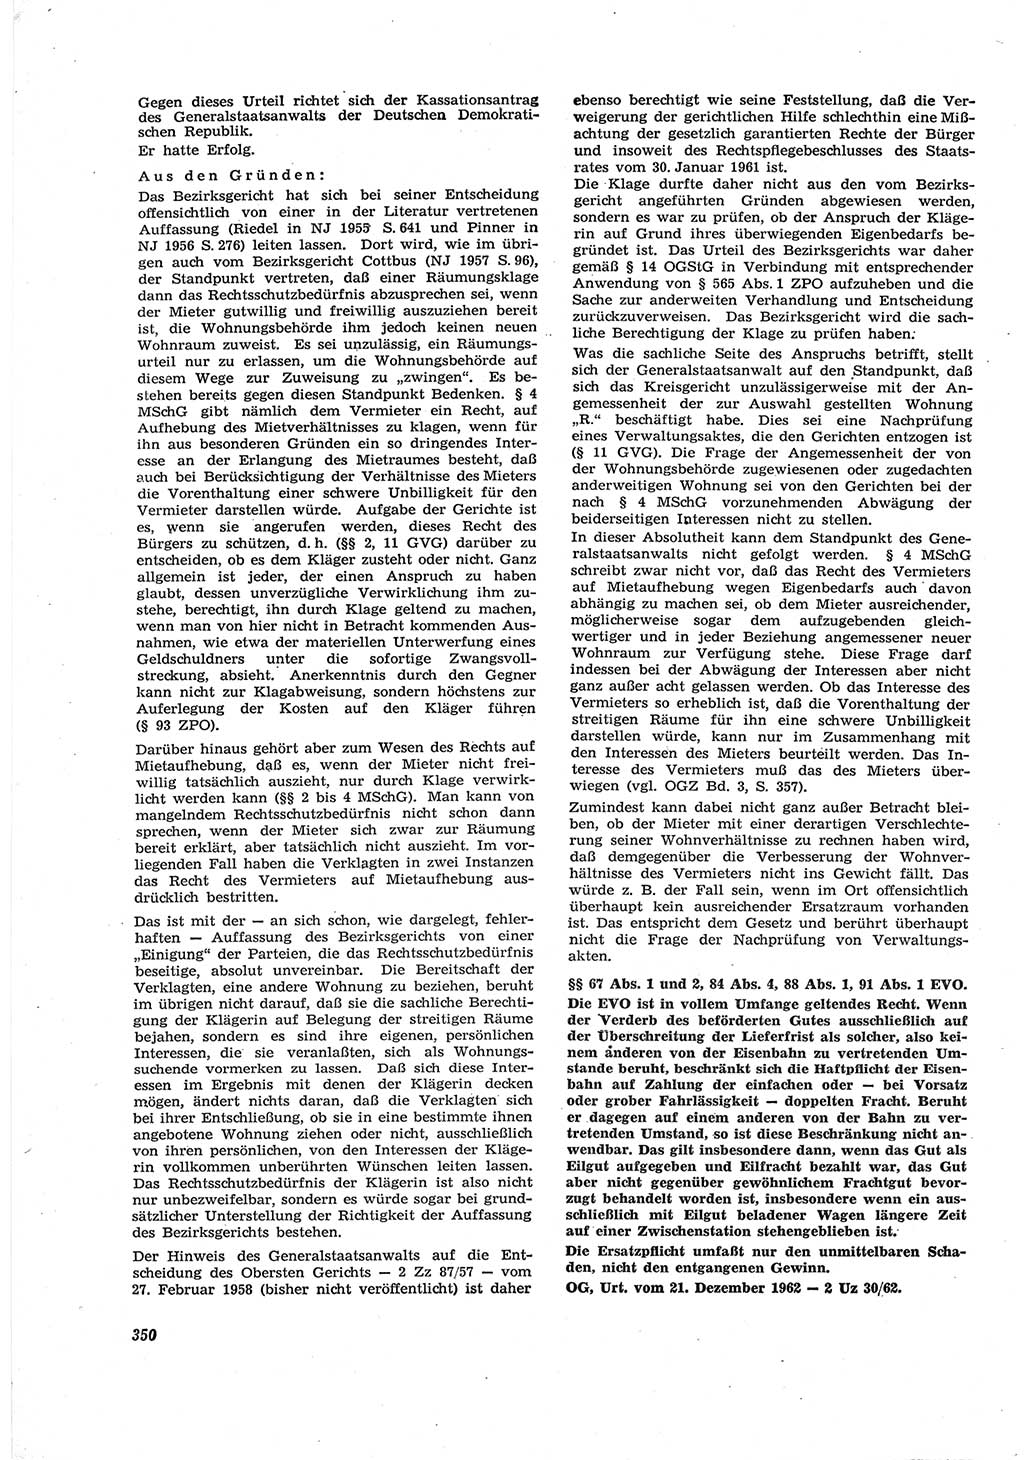 Neue Justiz (NJ), Zeitschrift für Recht und Rechtswissenschaft [Deutsche Demokratische Republik (DDR)], 17. Jahrgang 1963, Seite 350 (NJ DDR 1963, S. 350)